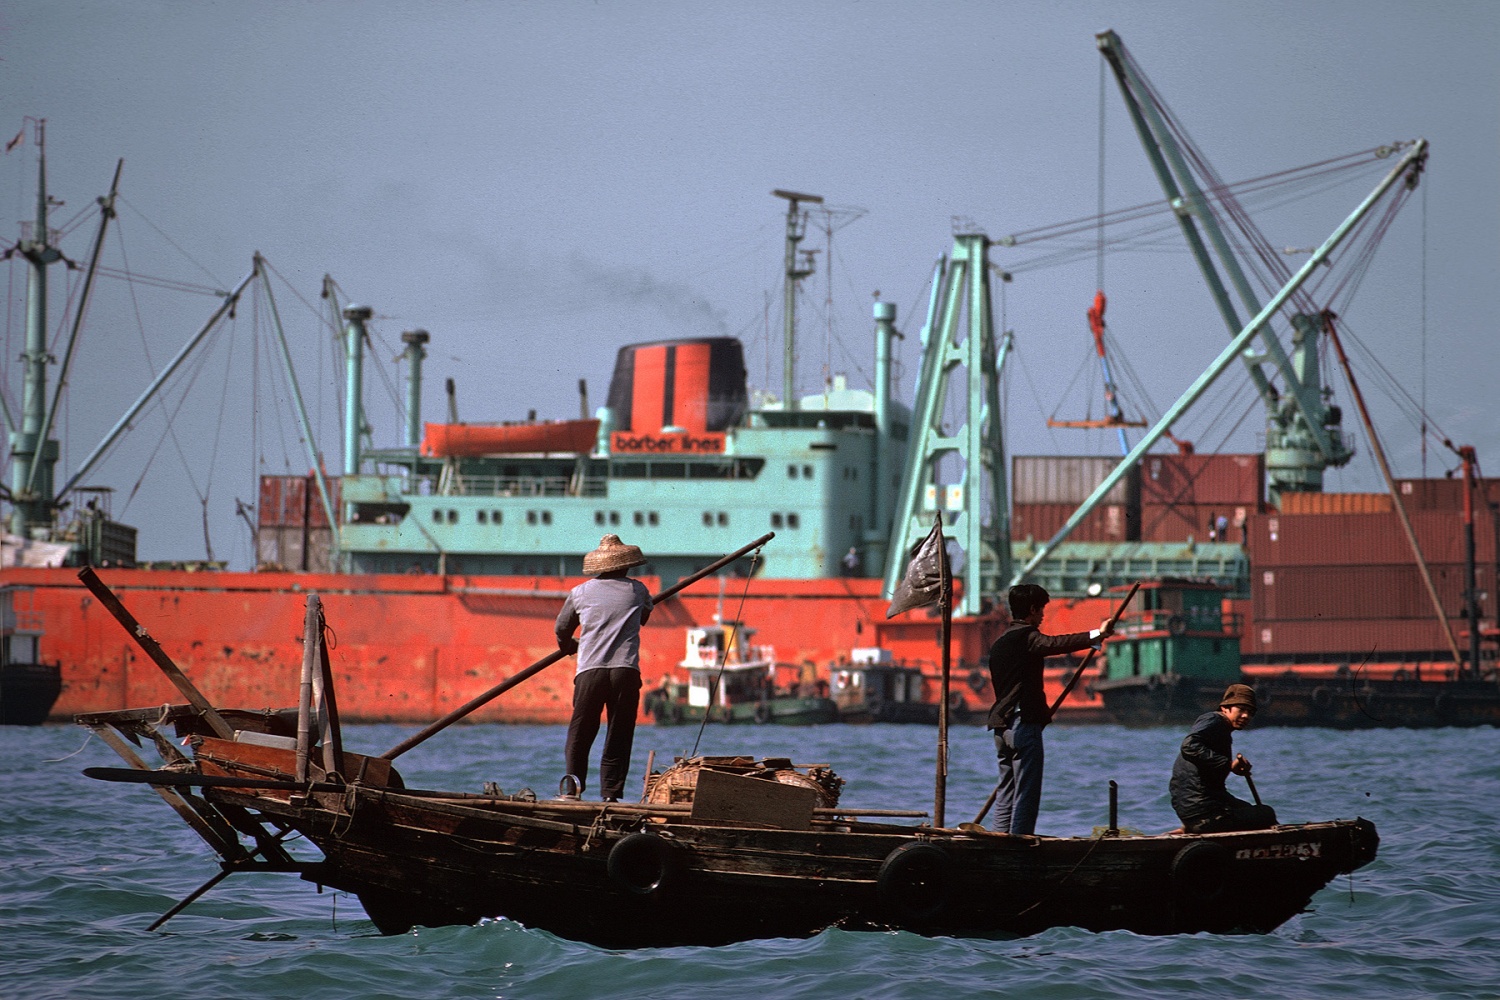 bill-hocker-victoria-harbour-hong-kong-1979